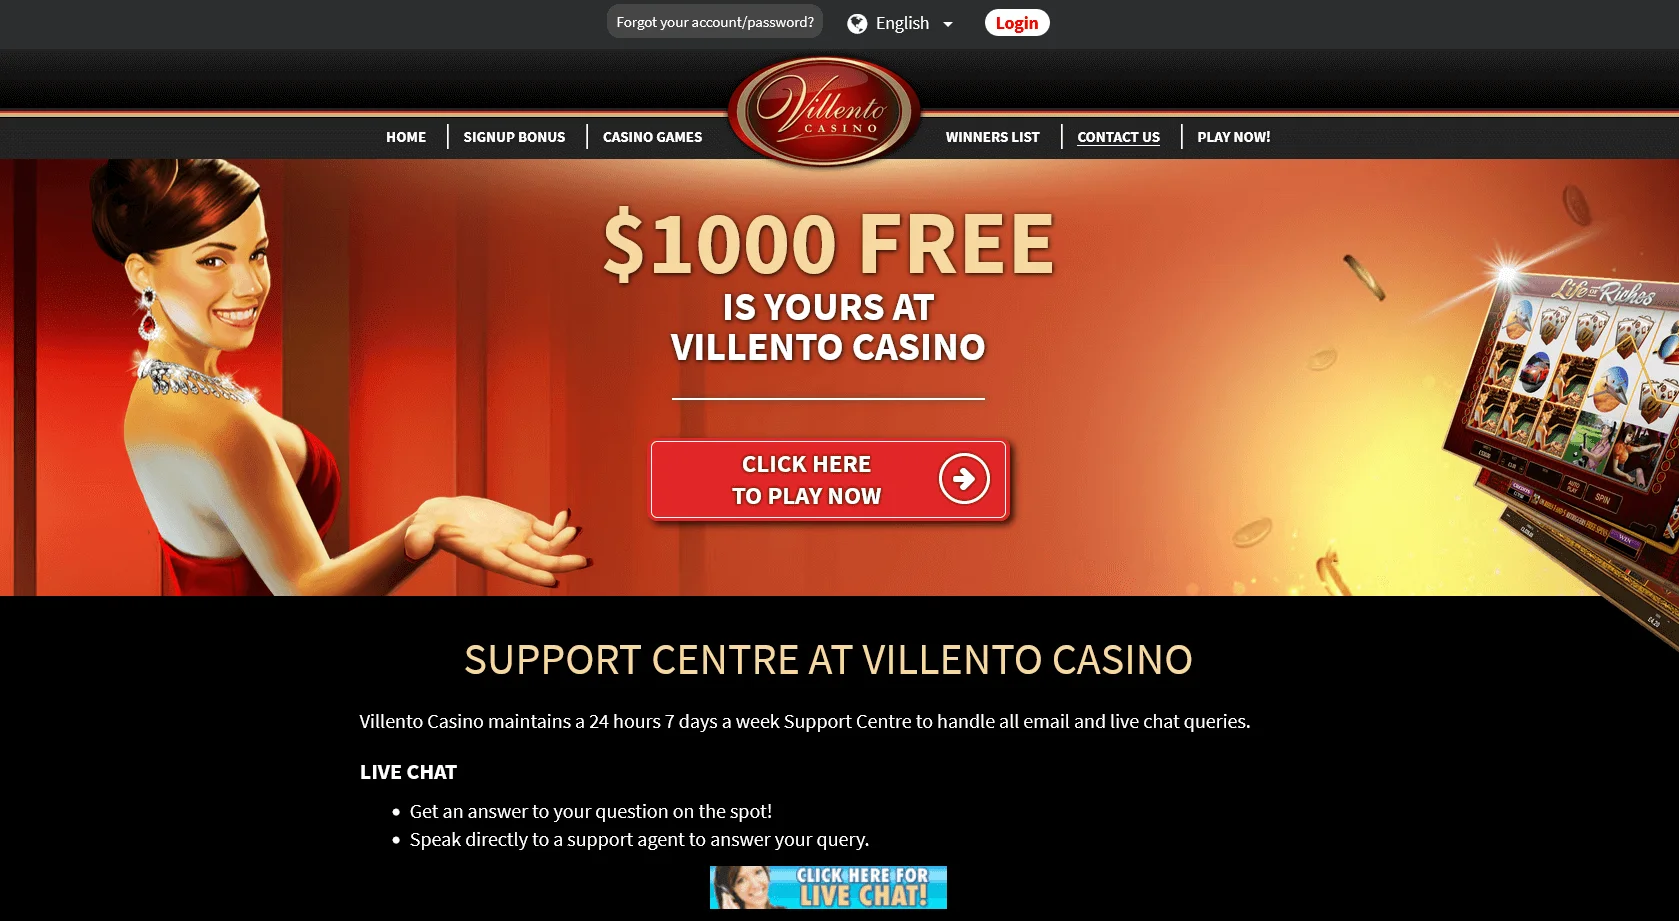 Bonusy a programy loajality na Golden Villento Casino